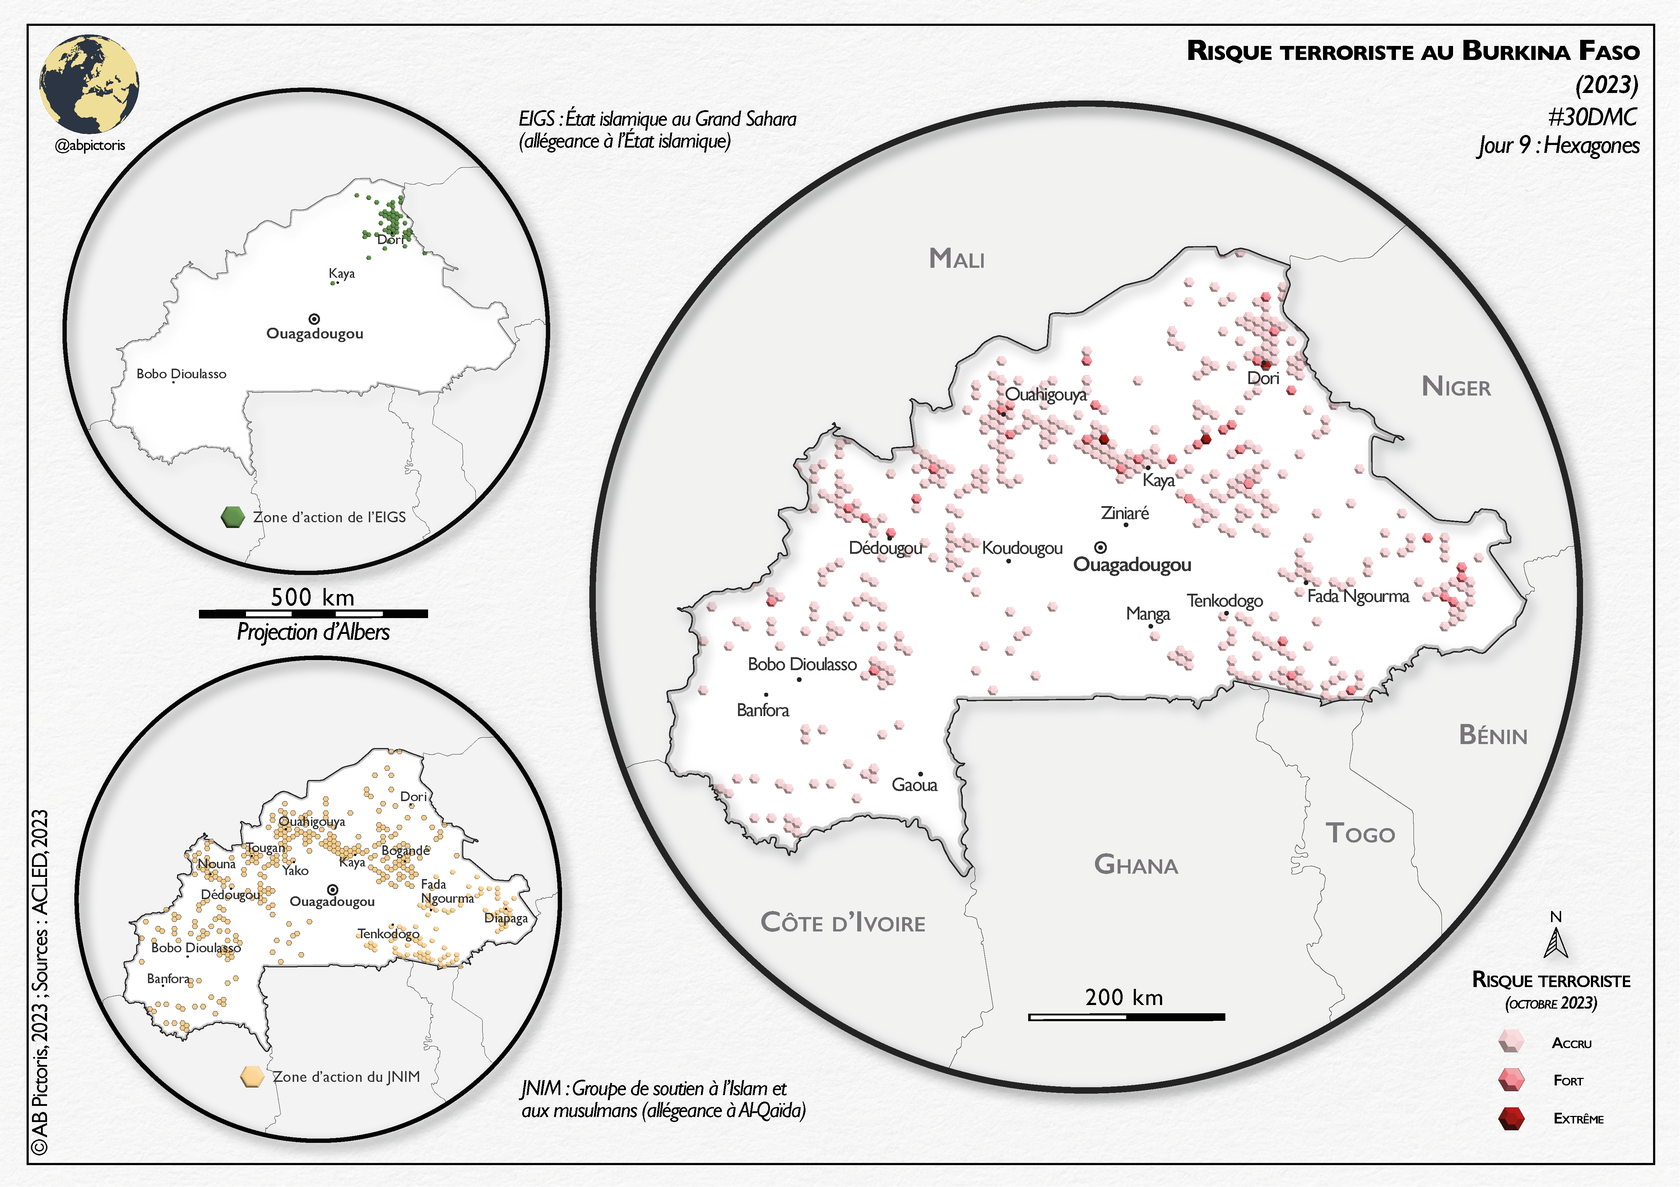 Carte détaillant les zones d&#39;activité terroristes au Burkina Faso avec des indications des zones d&#39;action de l&#39;EIGS et du JNIM, mettant en évidence la répartition des attaques terroristes et le niveau de risque terroriste dans le pays